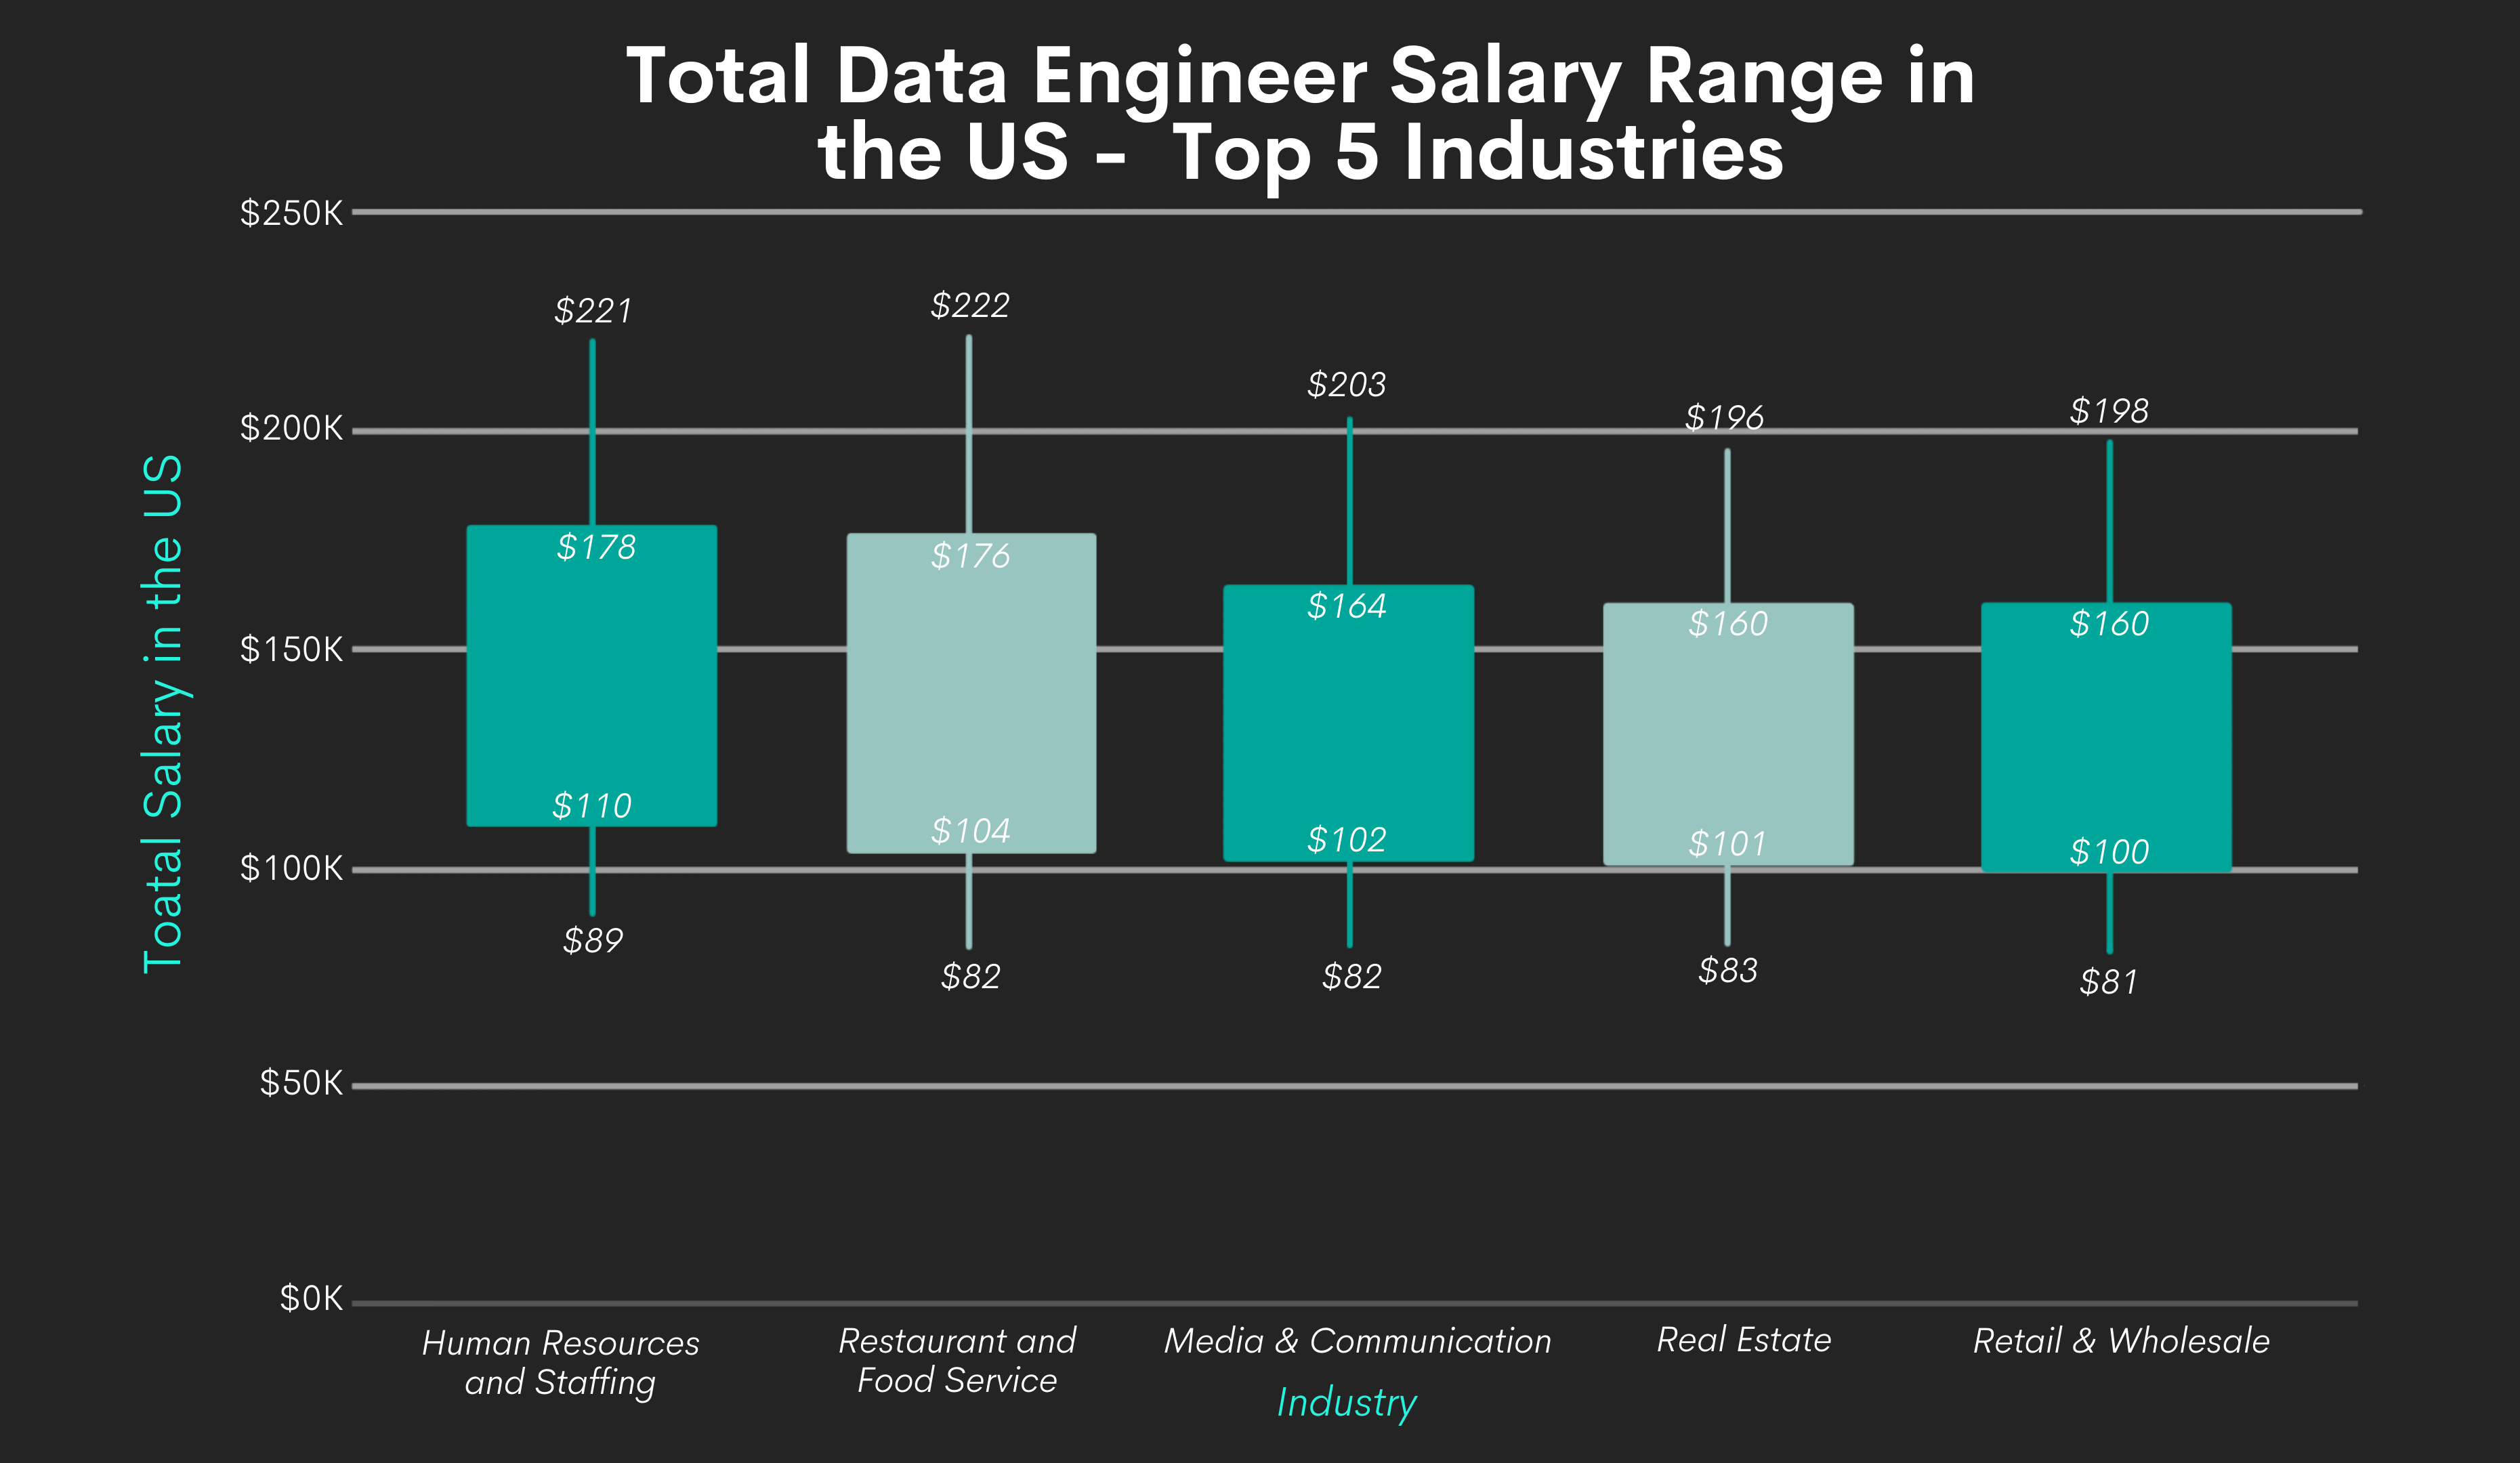 Total Data Engineer Salaries Range by Industries